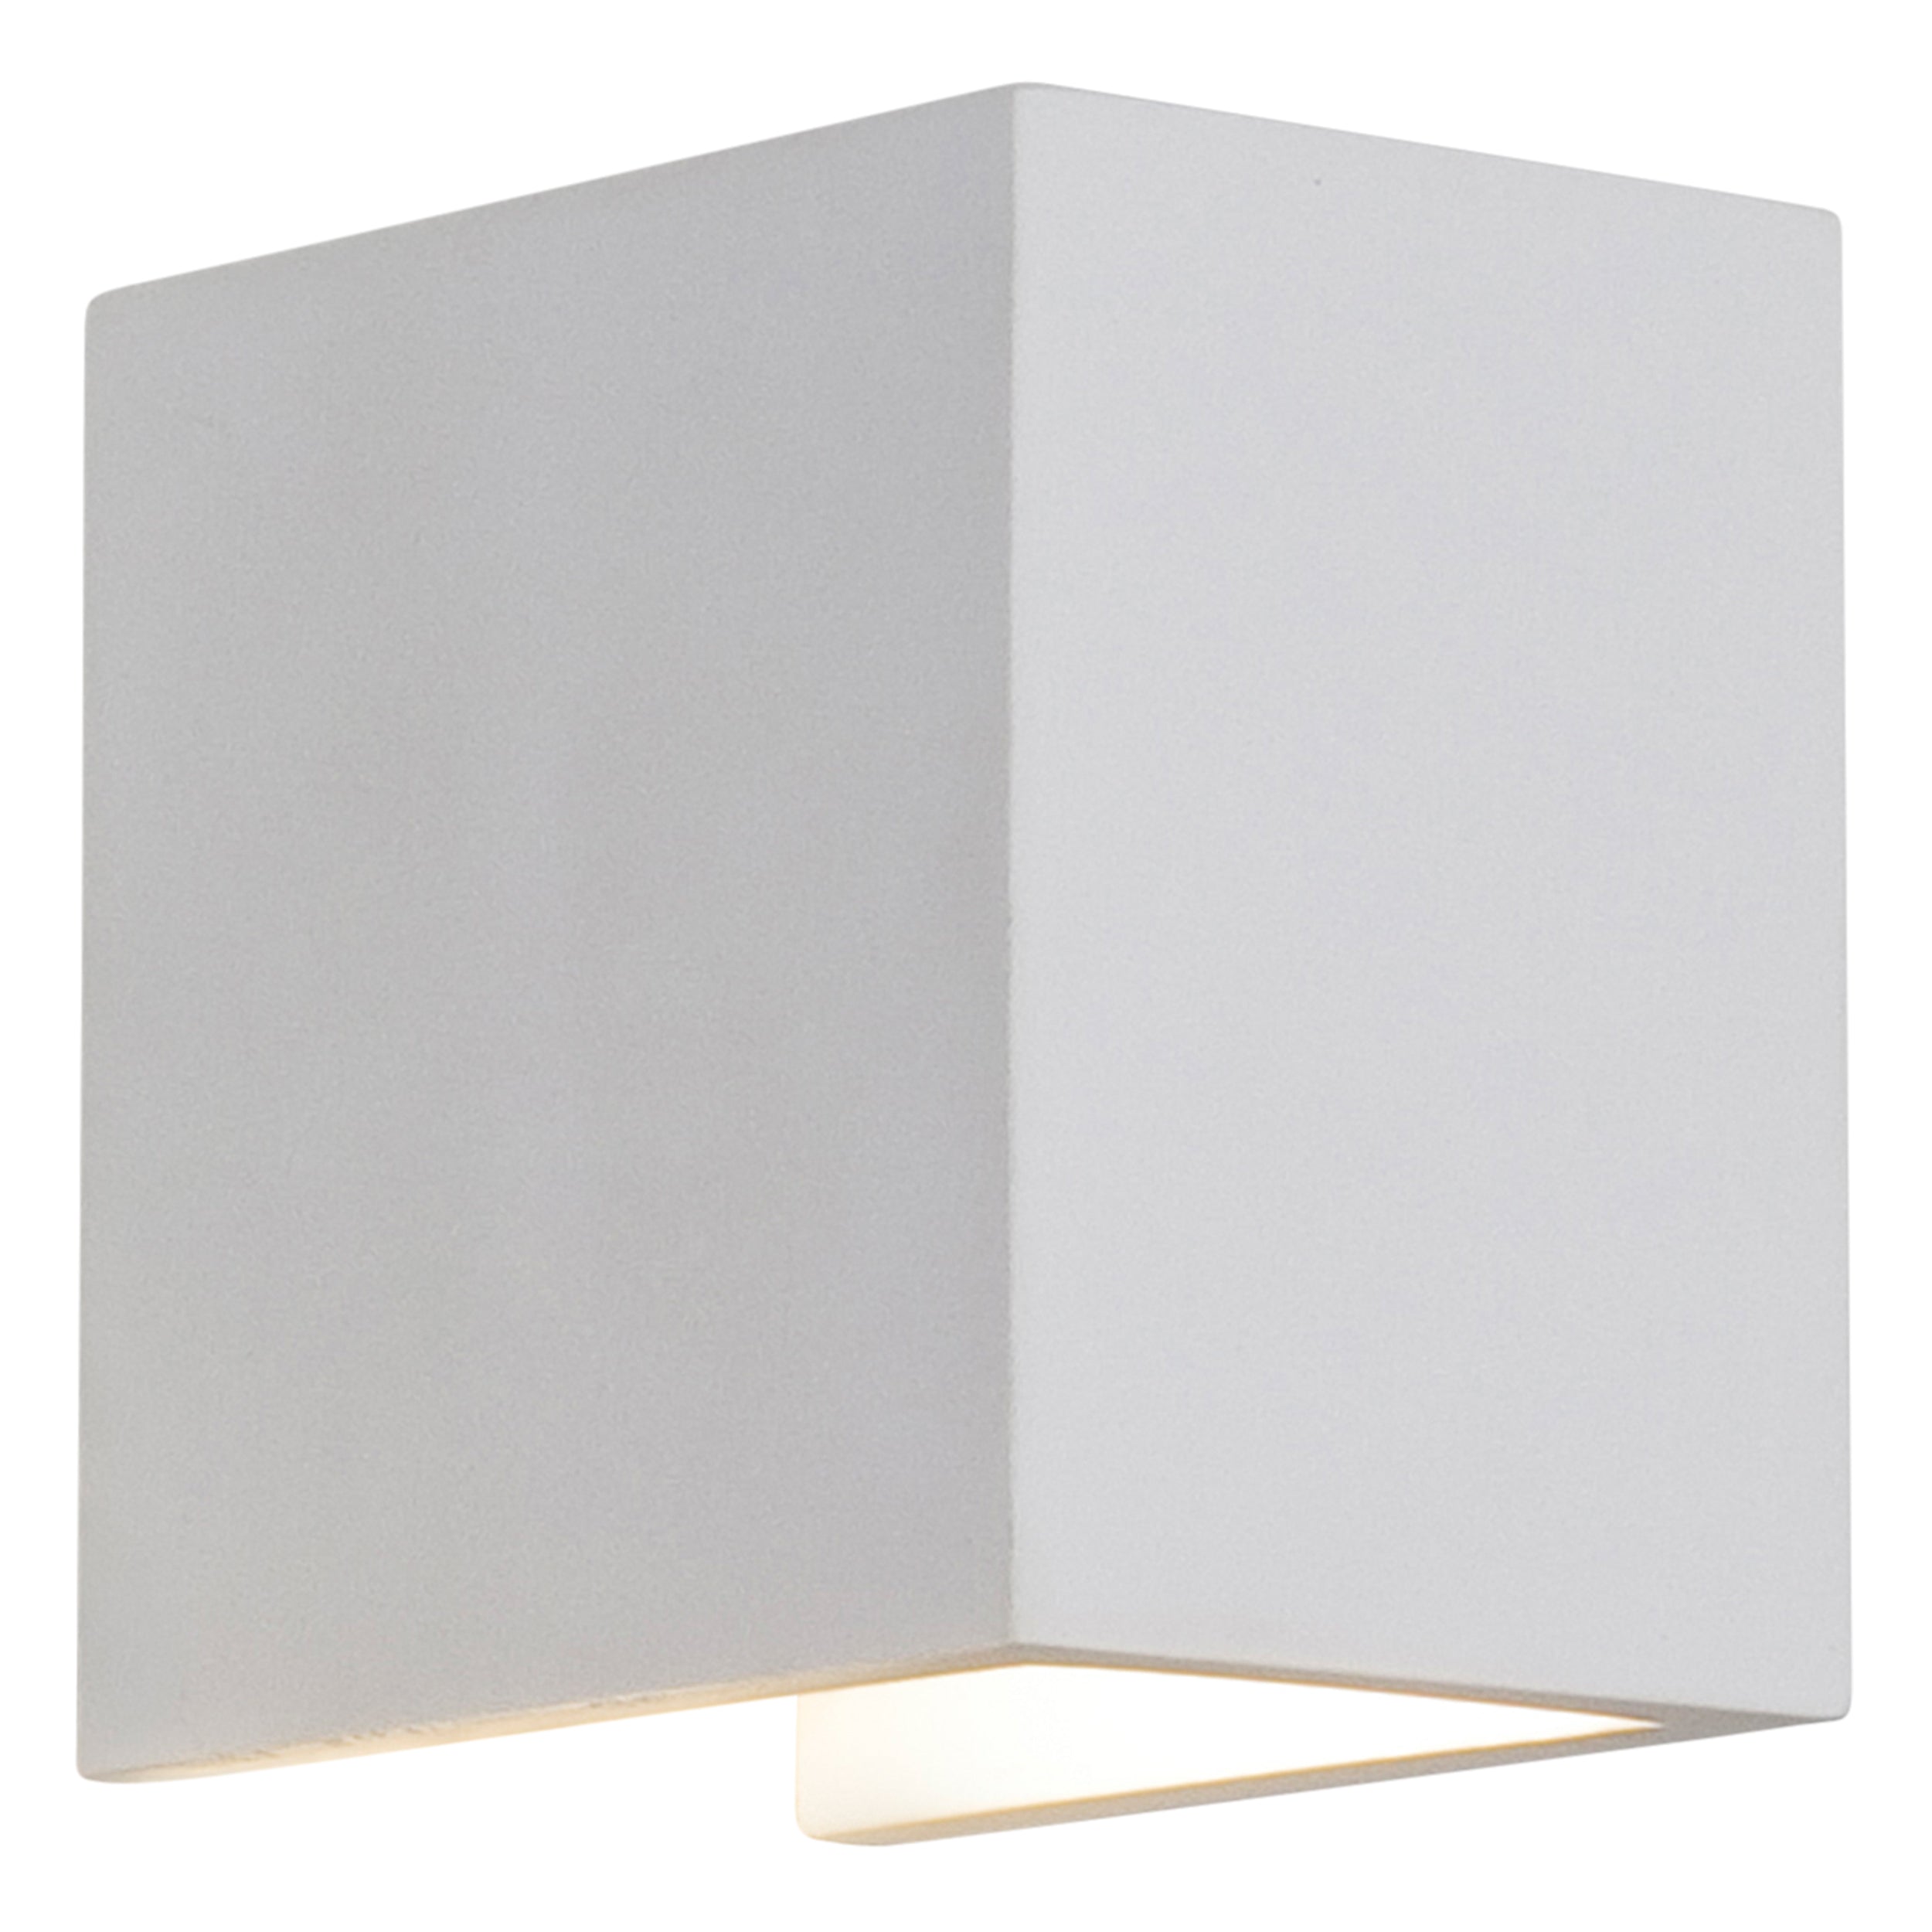 En lille hvid og enkel væglampe i firkantet form fremstillet i gips med nedadgående lys.